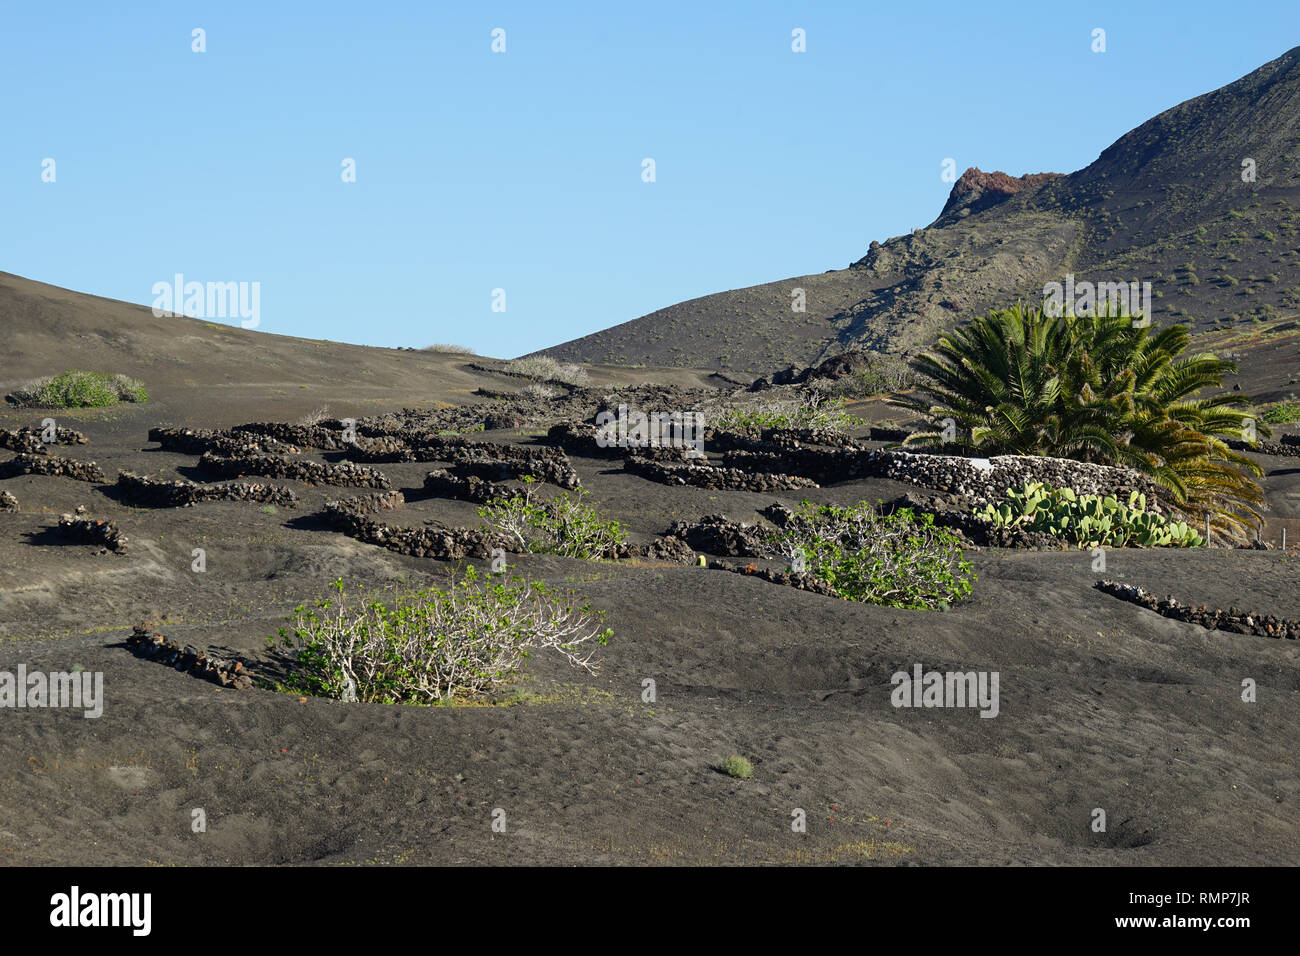 La Geria, Lapilli-Schicht Enarenado-Flächen Weinbau auf,, Lanzarote, Kanarische Inseln, Spanien Banque D'Images